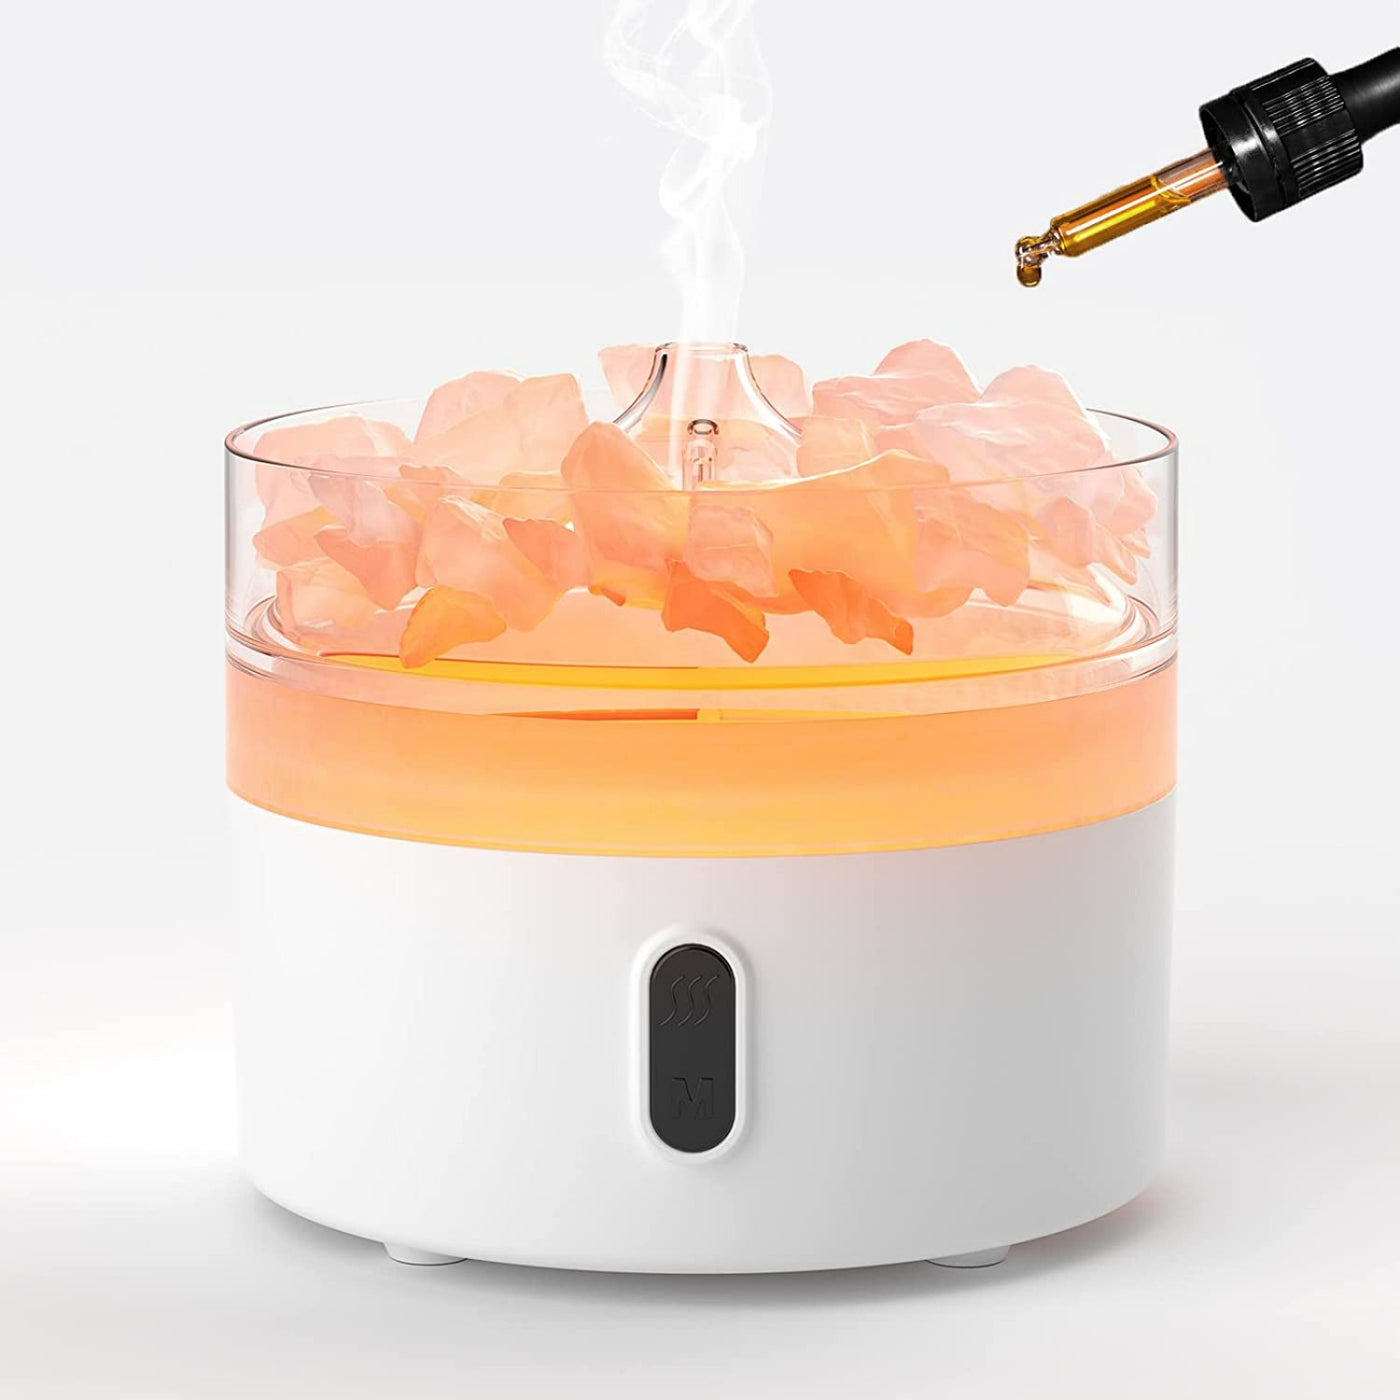 Flame Effect Himalayan Salt Aroma Diffuser With Light And Salt Rocks.